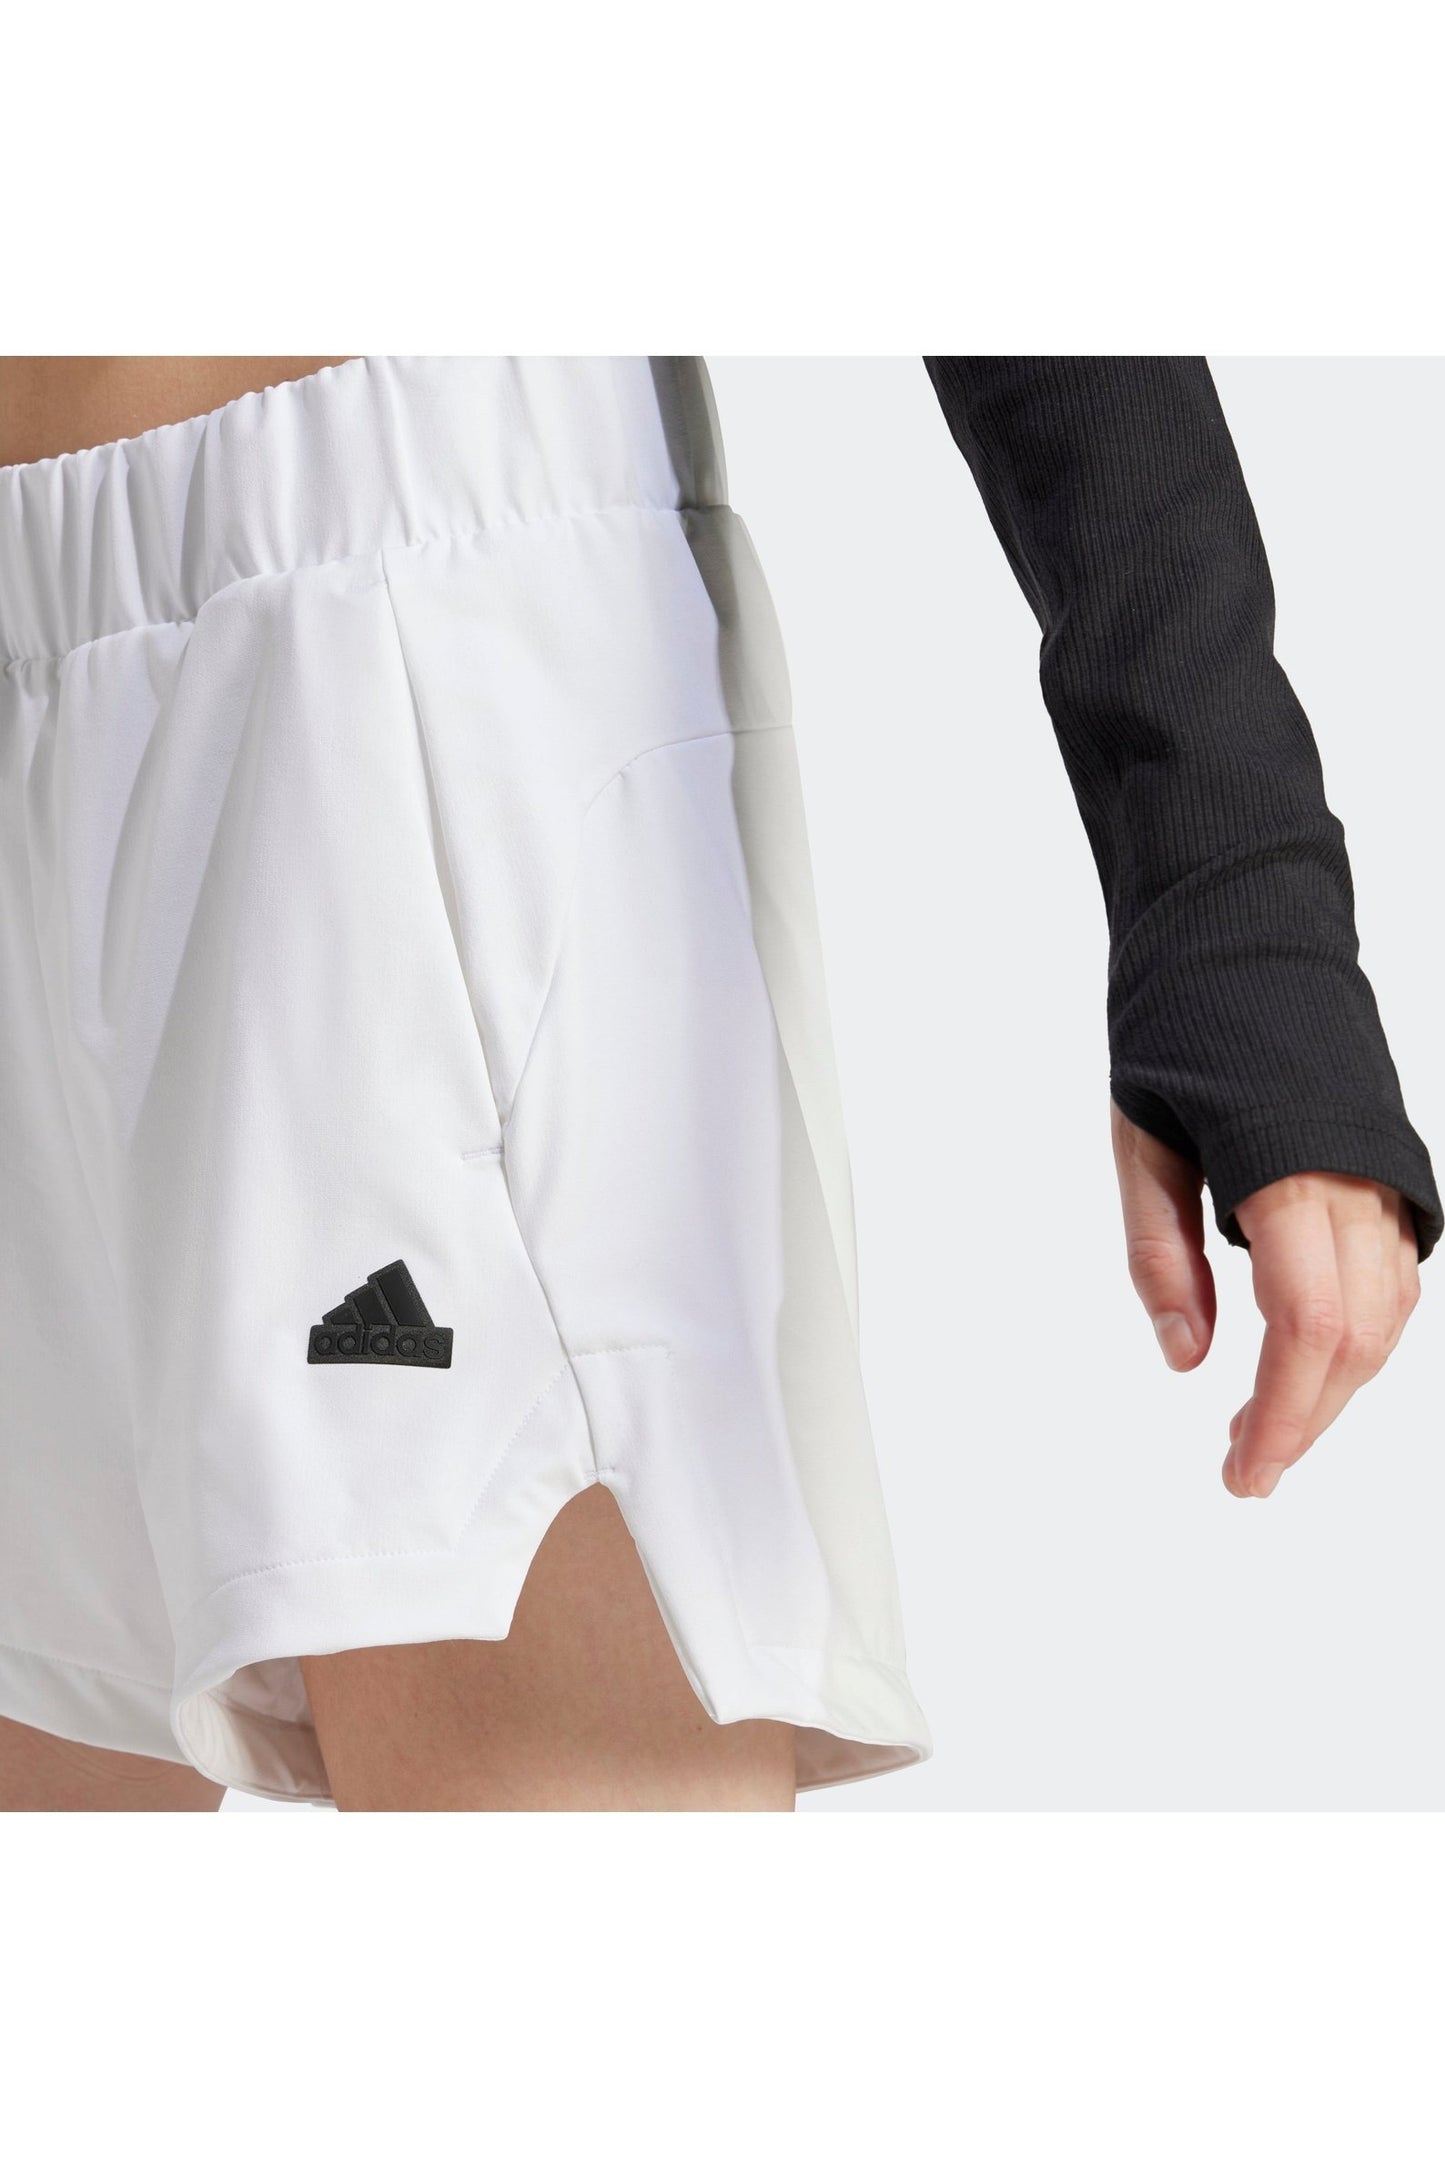 מכנסיים קצרים לנשים Z.N.E. WOVEN בצבע לבן